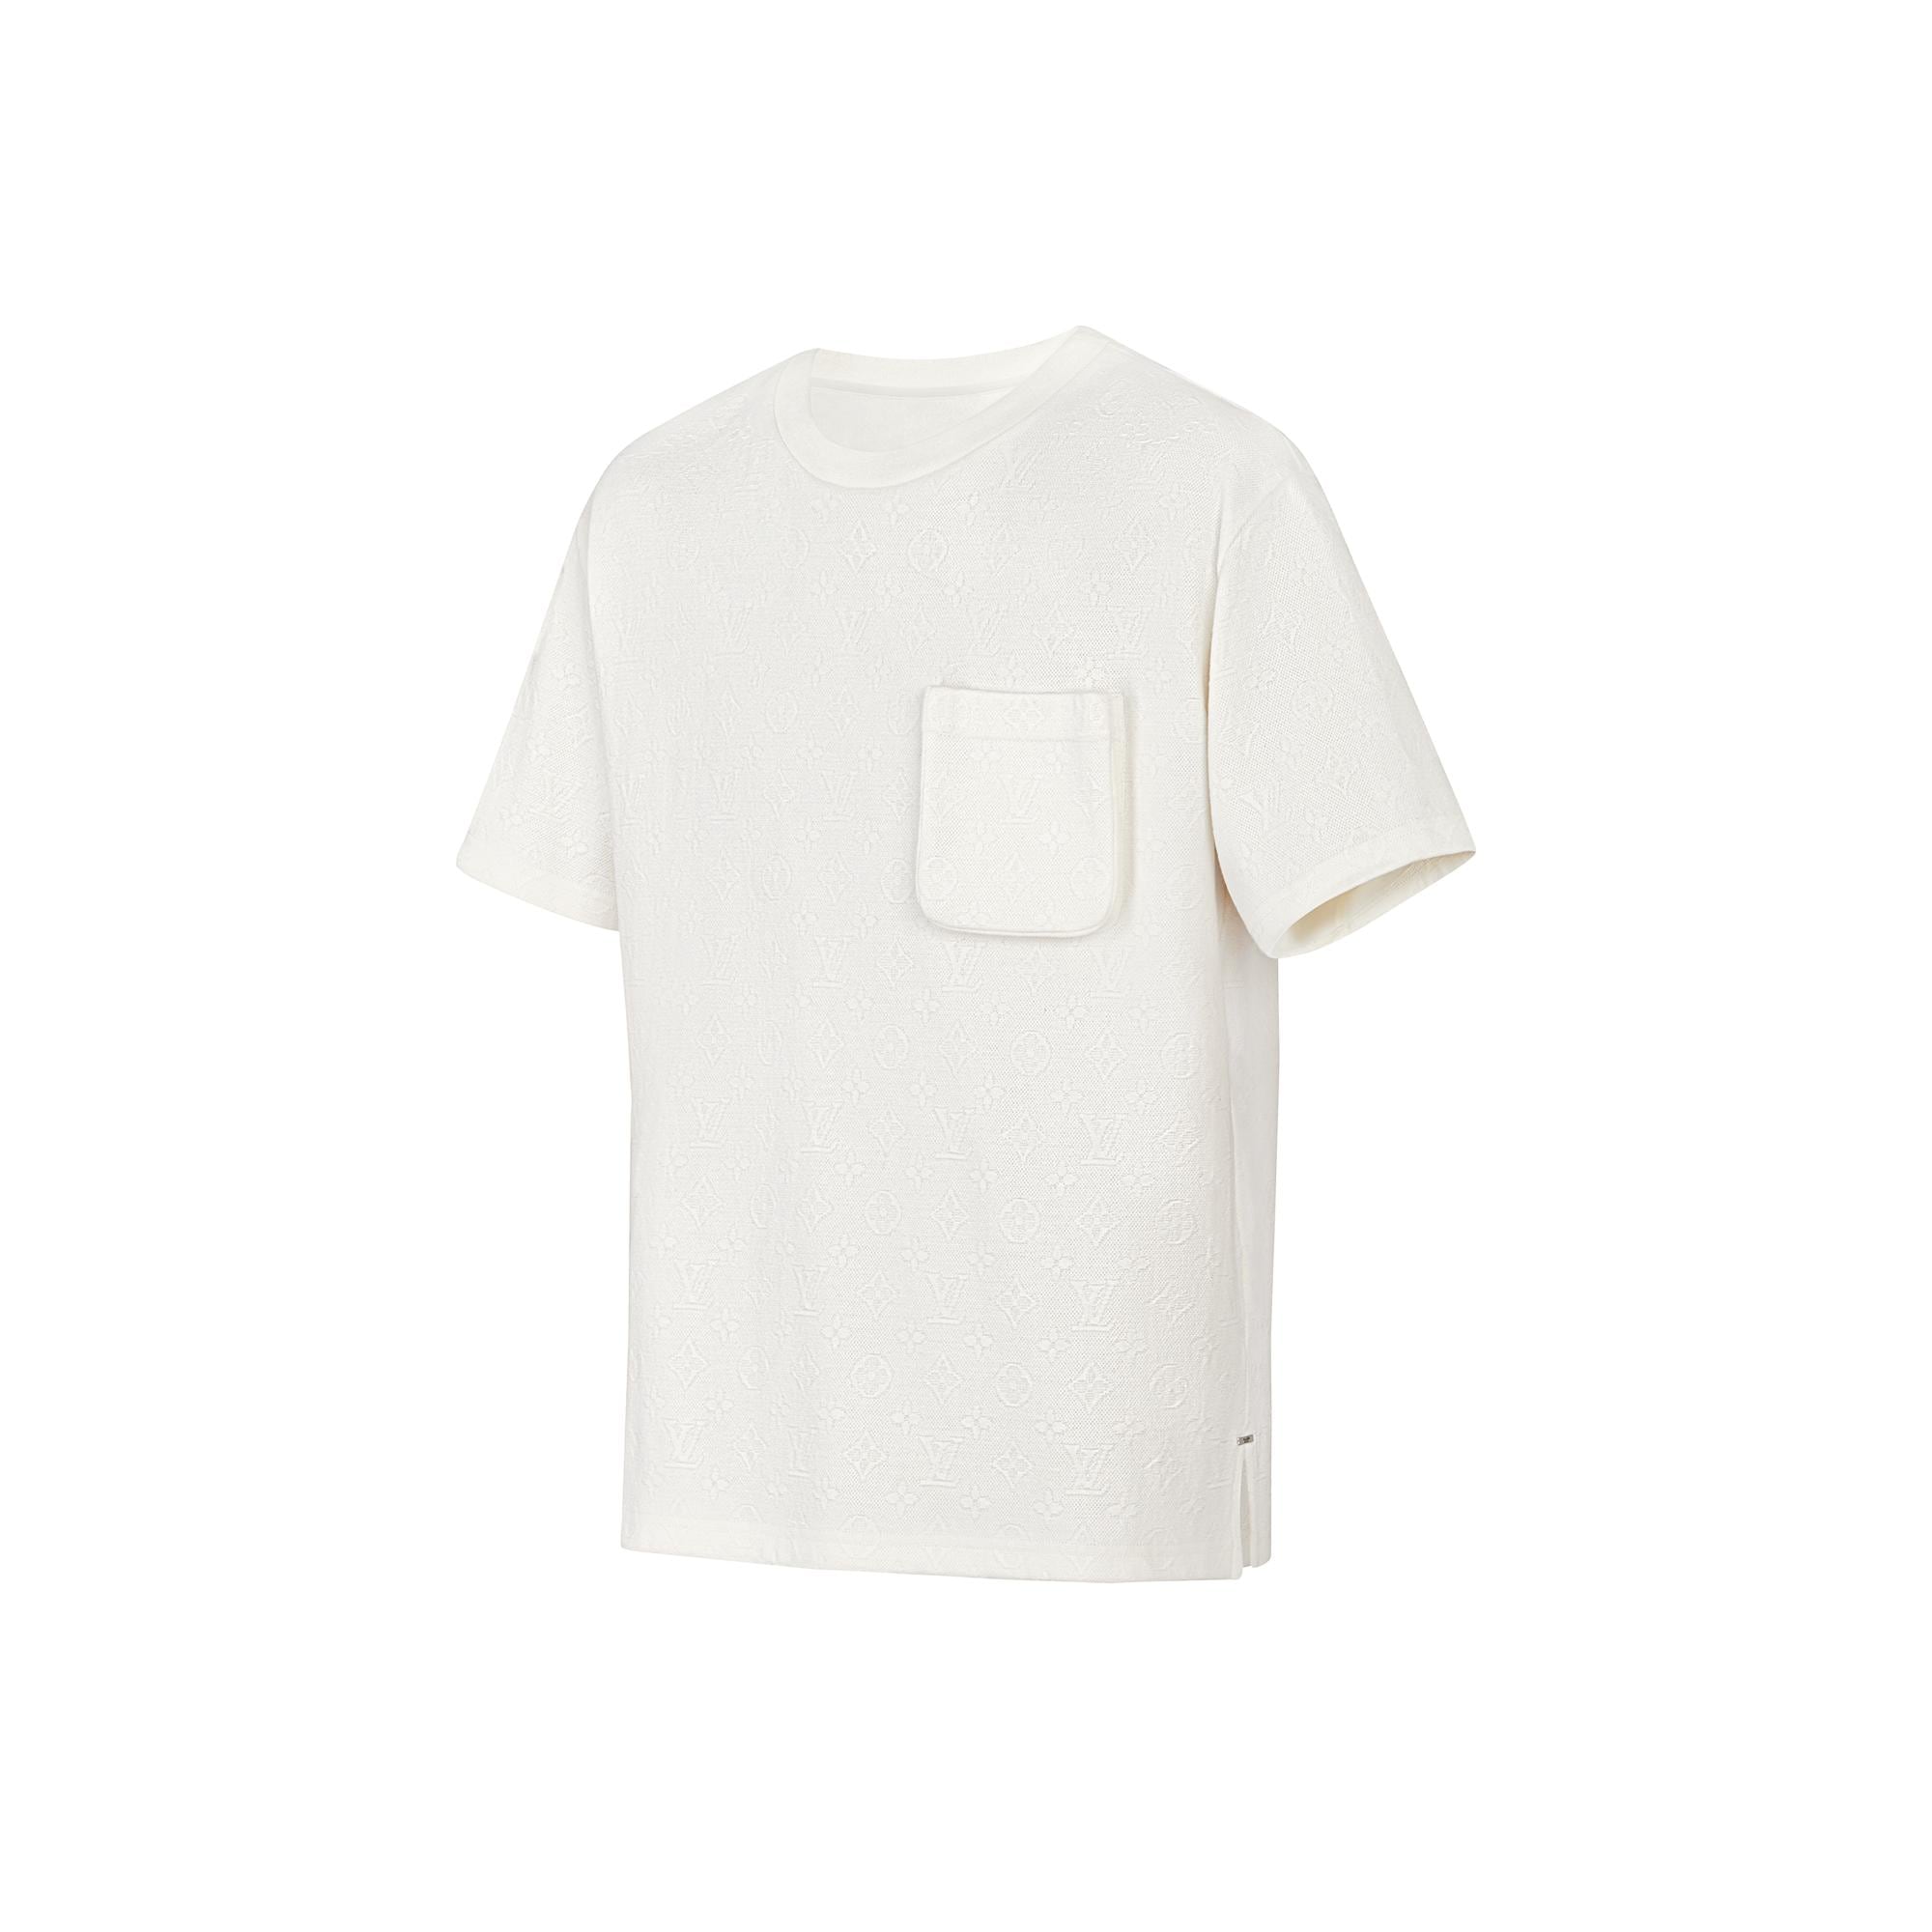 Louis Vuitton Signature 3d Pocket Monogram T-shirt - White